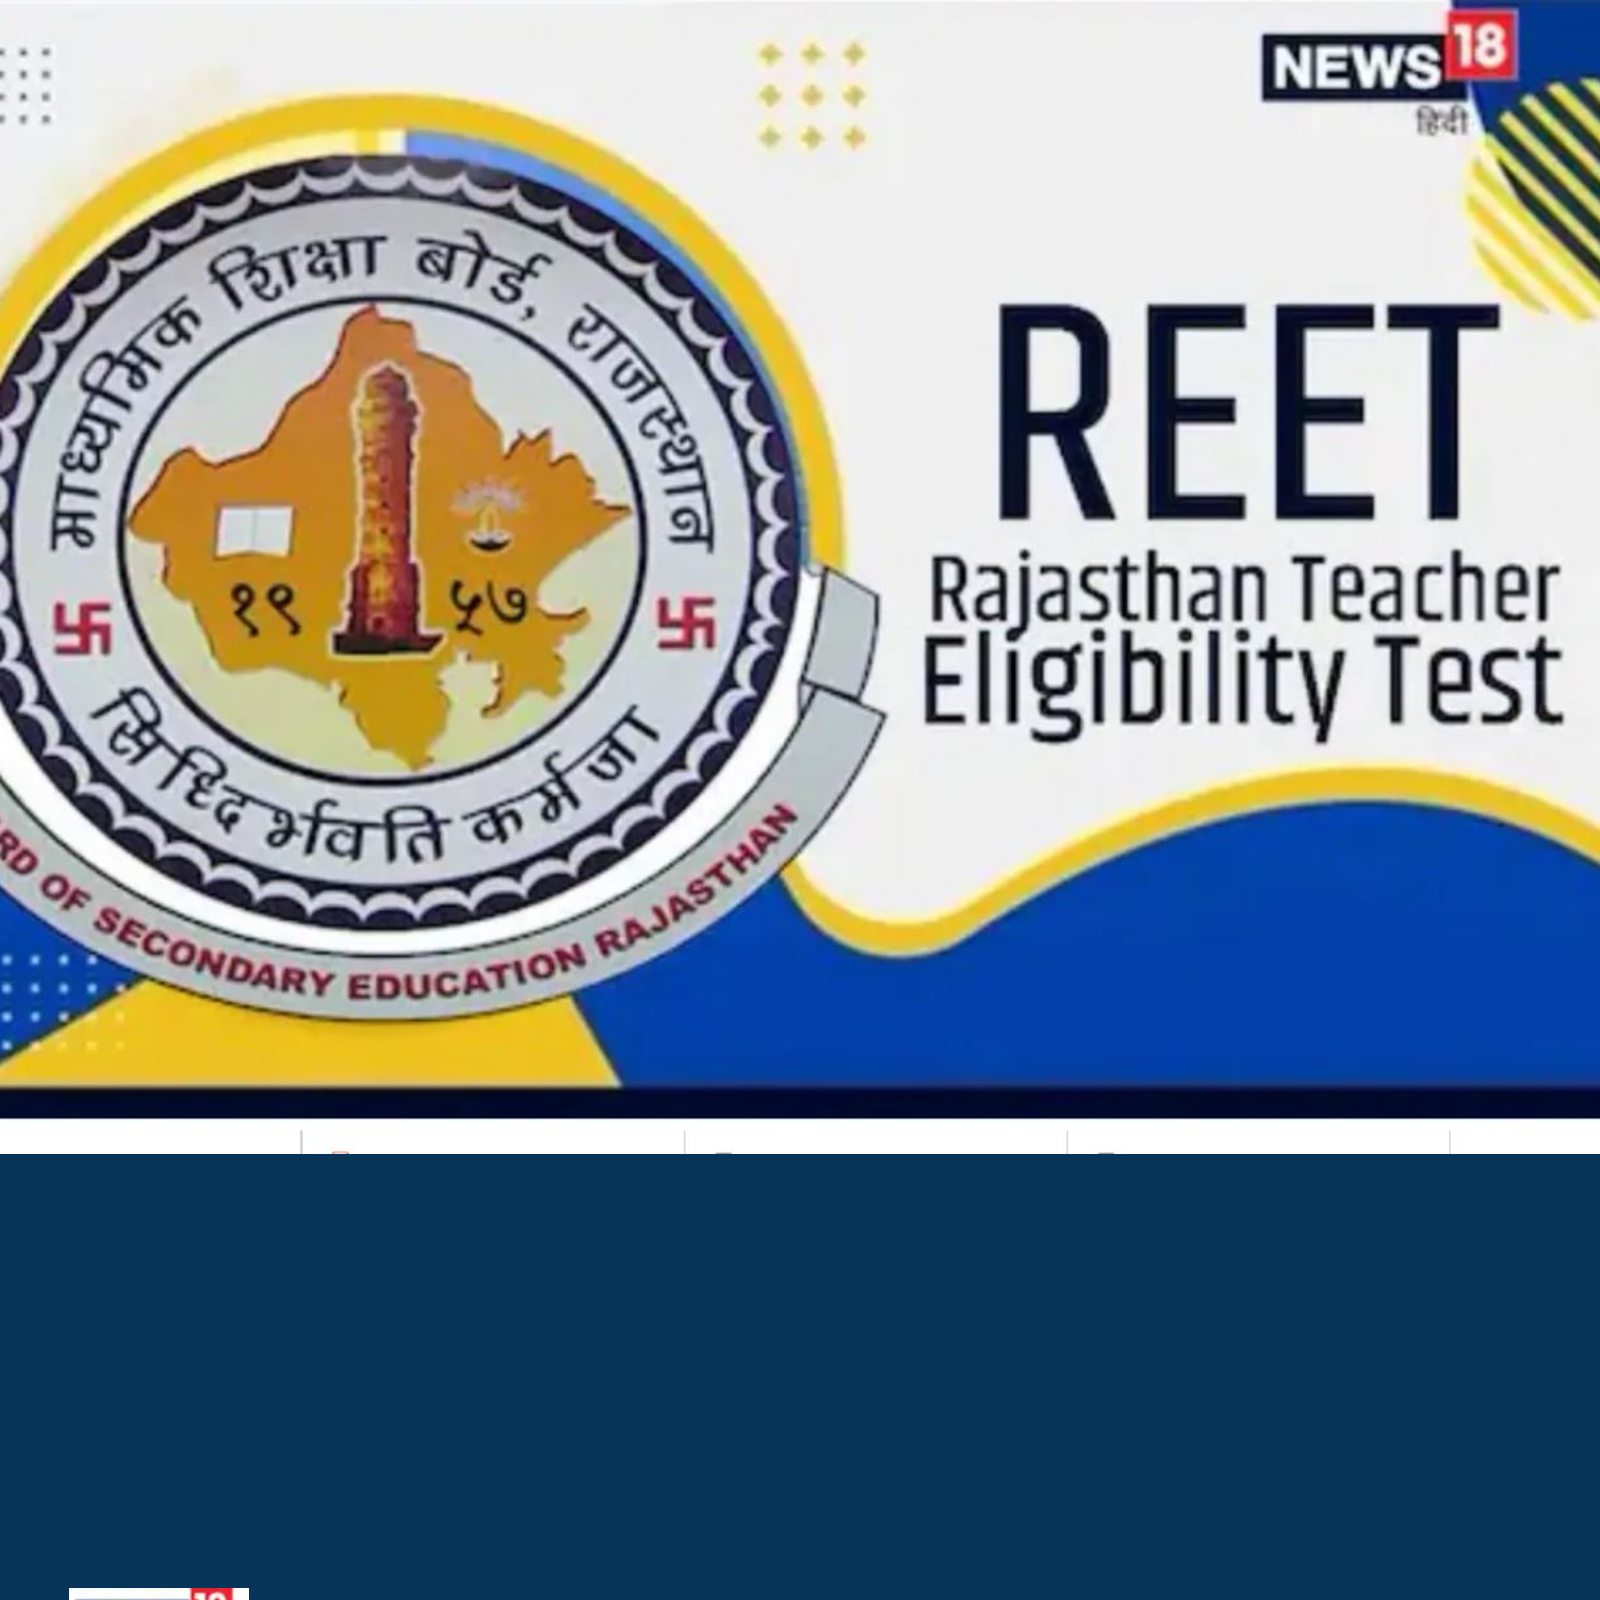 REET Certificate 2022 Download Link रीट सर्टिफिकेट 2022 डाउनलोड करें | REET  Certificate 2022 Released reetbser2022.in, Download Direct Link Here -  Hindi Careerindia